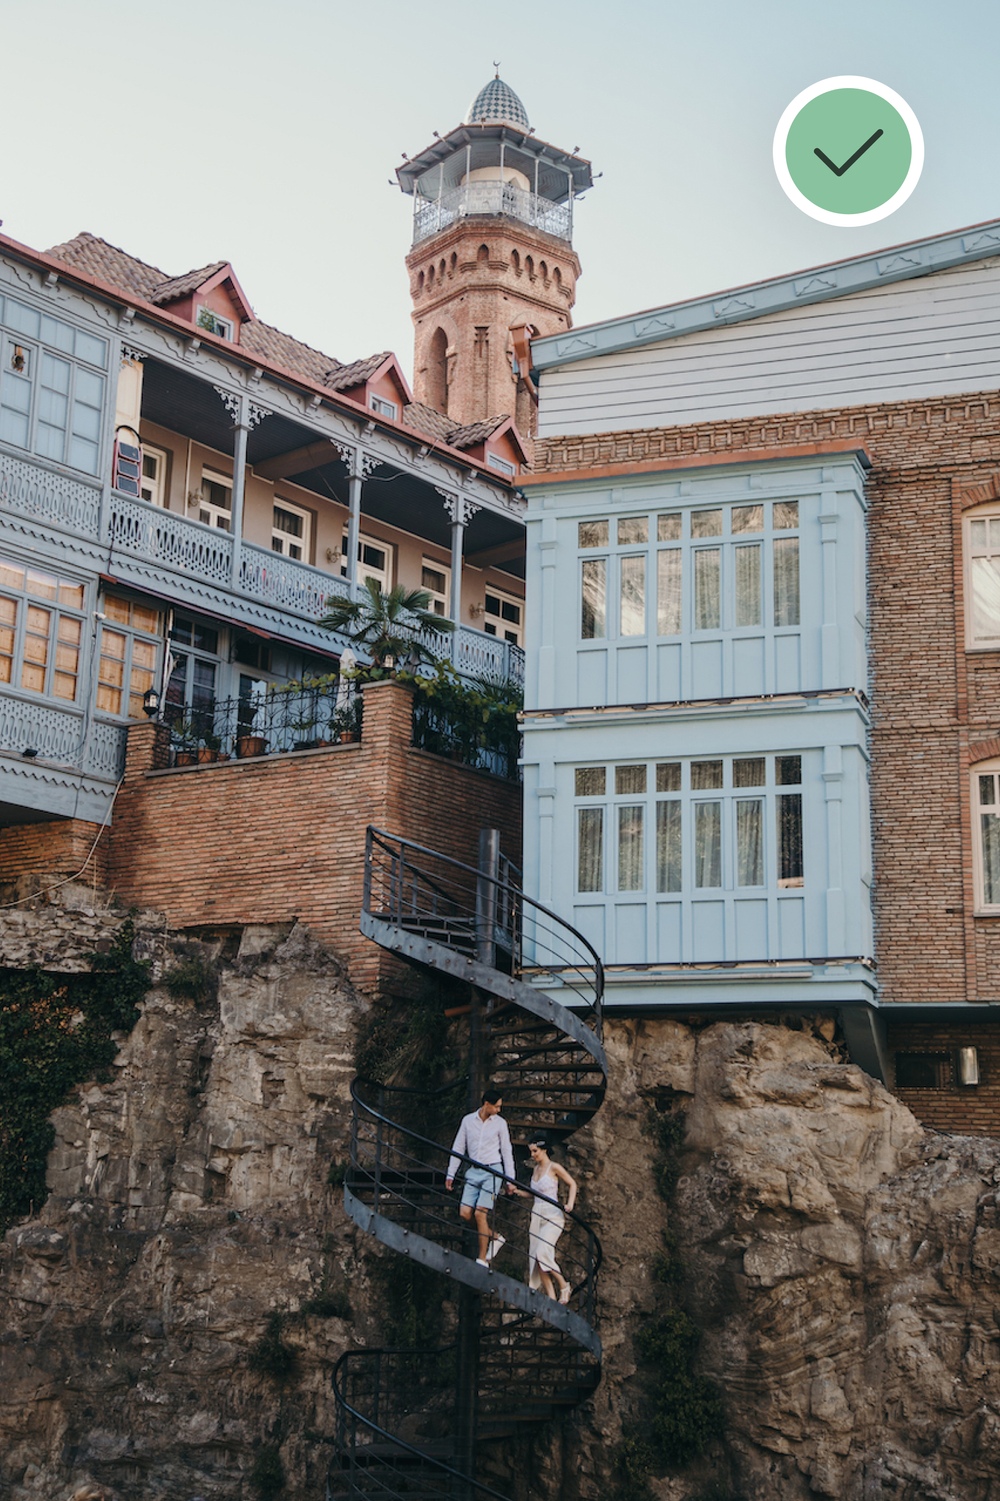 Zdjęcia ślubne Poznań - para wchodząca po schodach, Tbilisi Gruzja, świetna kompozycja